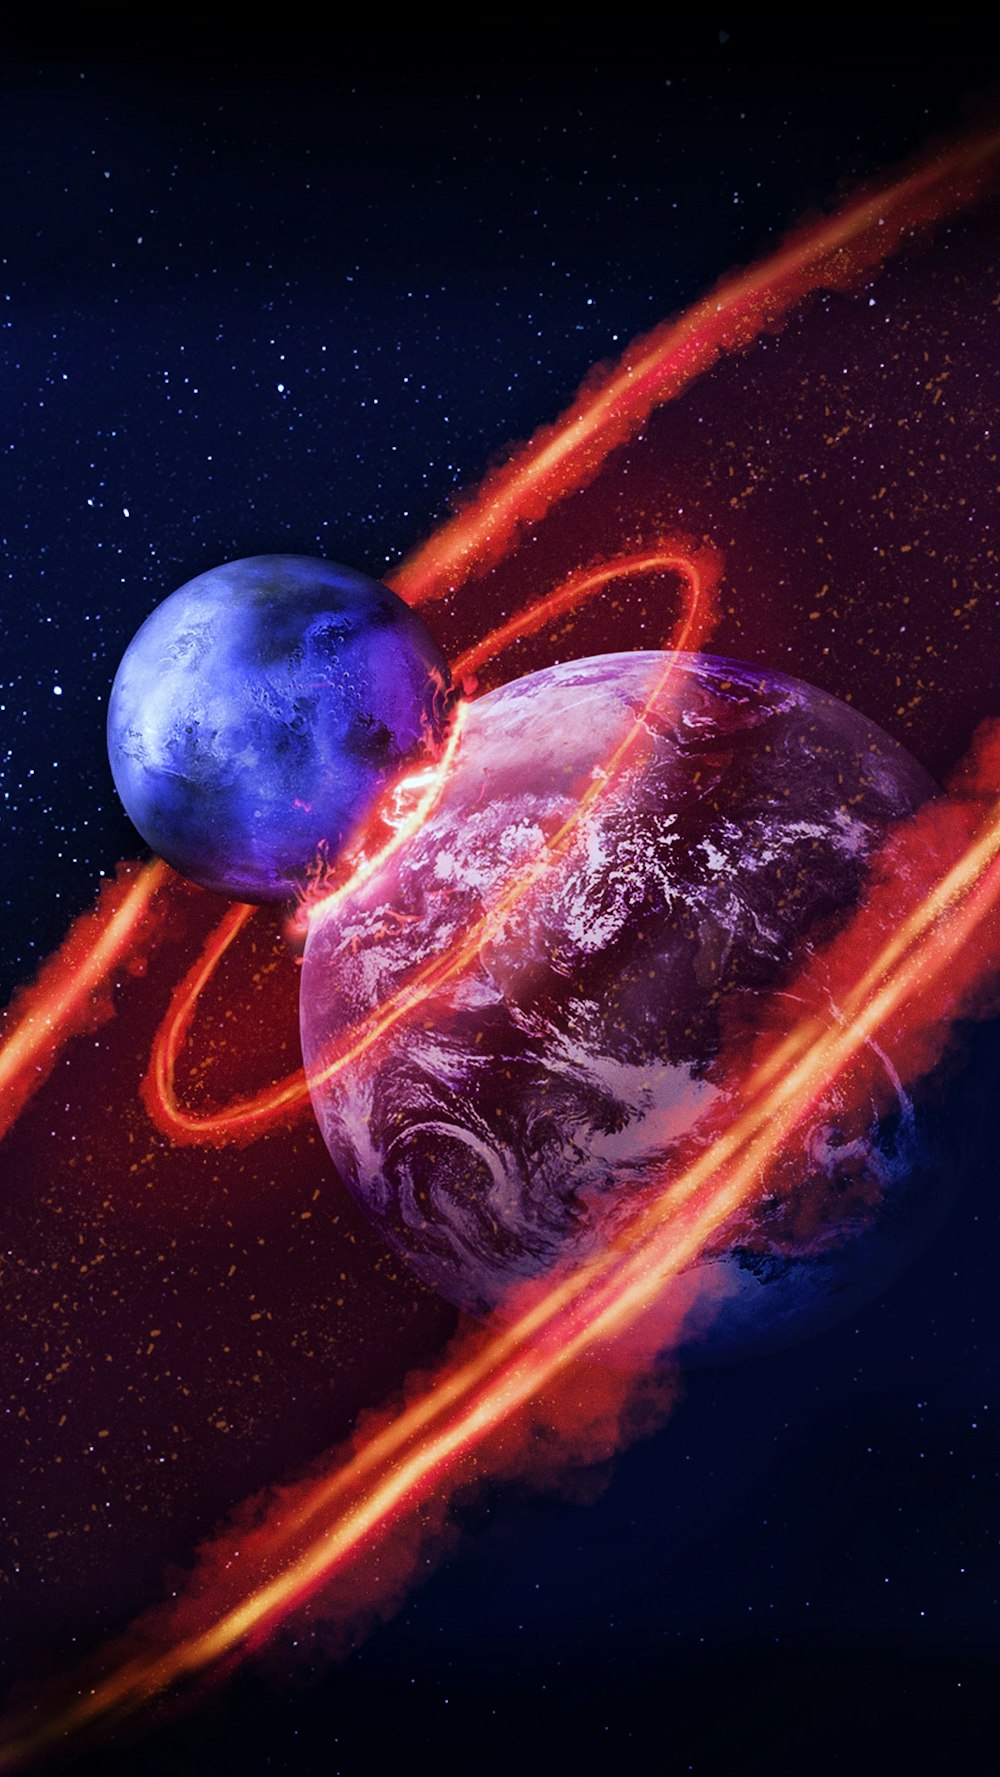 Rappresentazione artistica di una collisione tra due pianeti